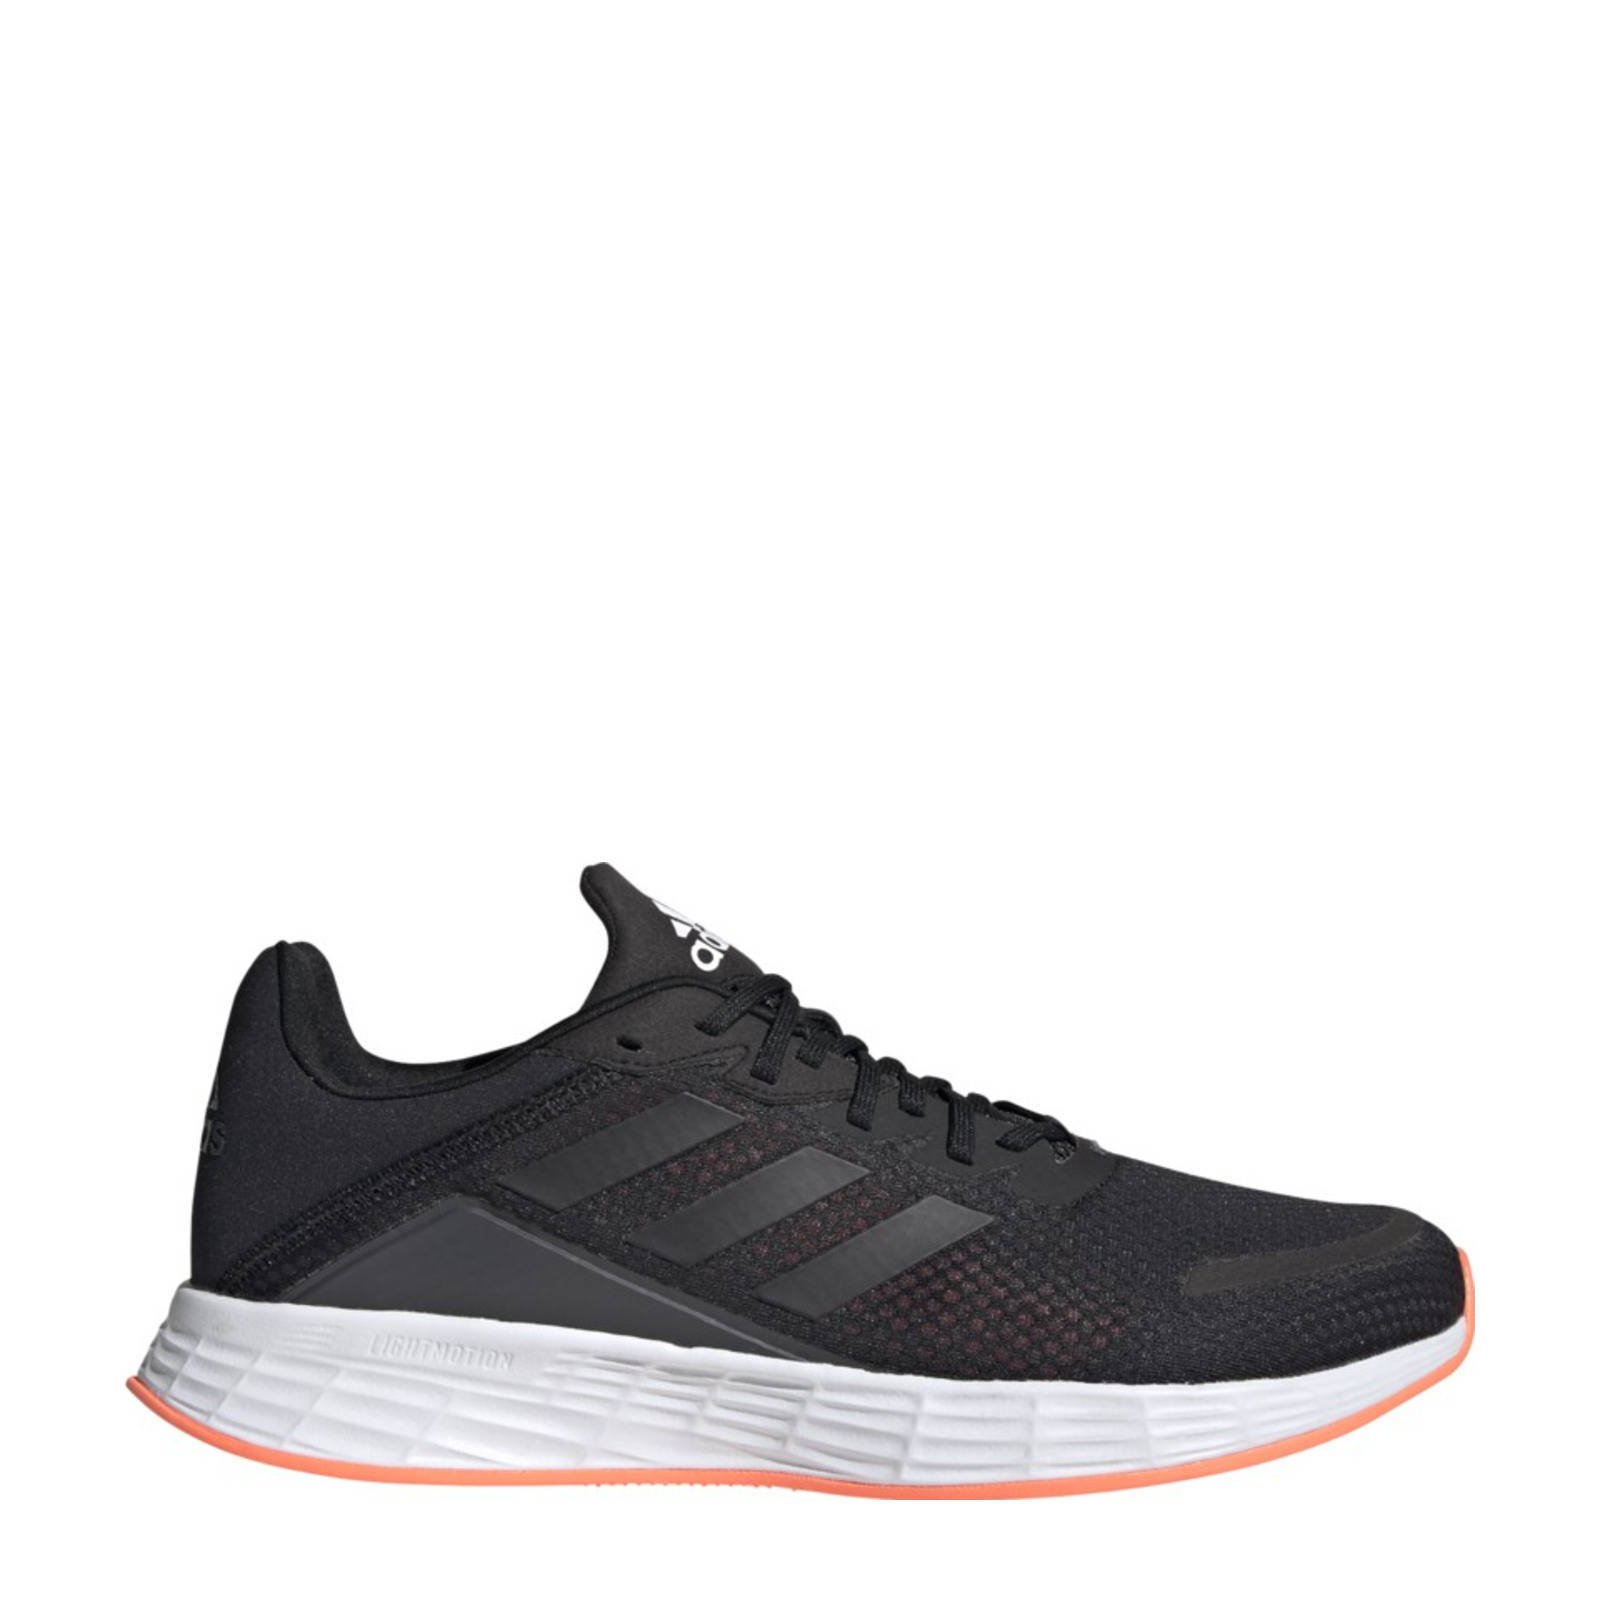 Adidas Performance Duramo Sl Classic hardloopschoenen zwart/grijs online kopen